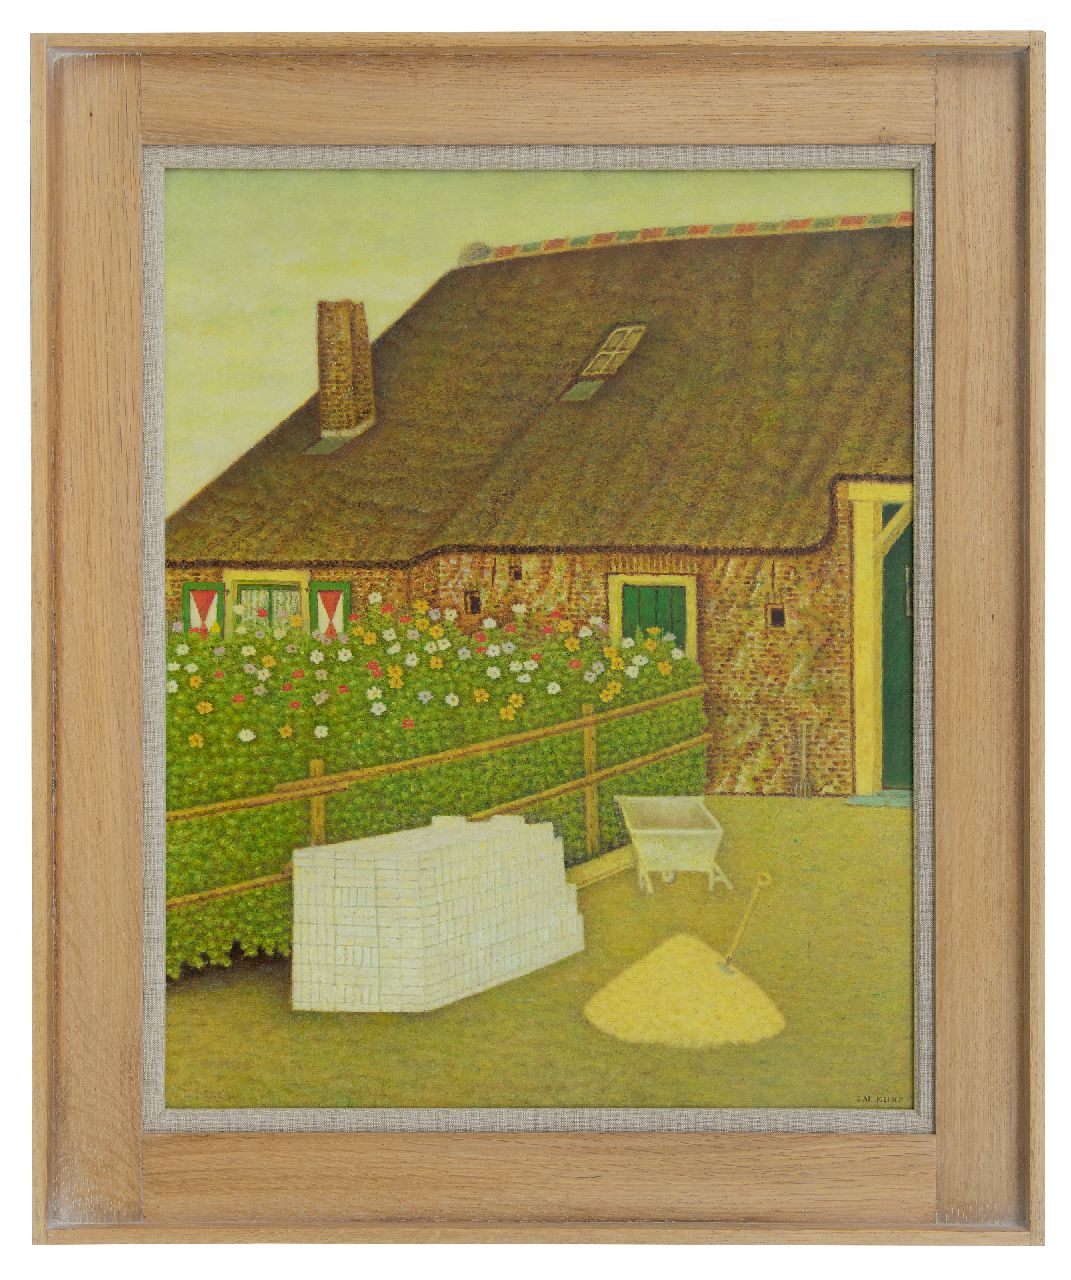 Meijer S.  | Salomon 'Sal' Meijer | Schilderijen te koop aangeboden | Boerderij, Blaricum, olieverf op paneel 51,0 x 41,1 cm, gesigneerd rechtsonder en linksonder (met resten)